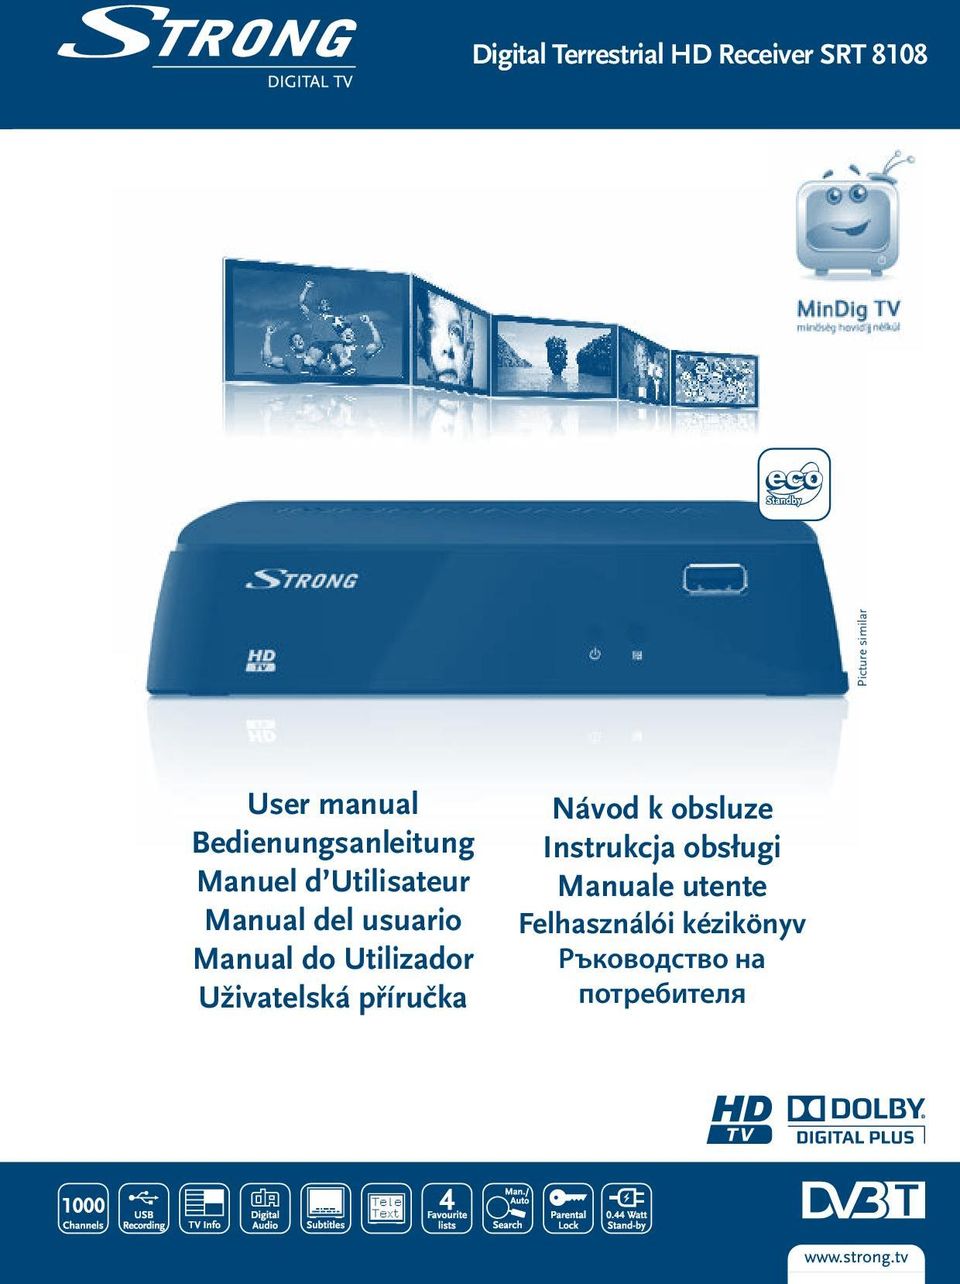 Manual do Utilizador Uživatelská příručka Návod k obsluze